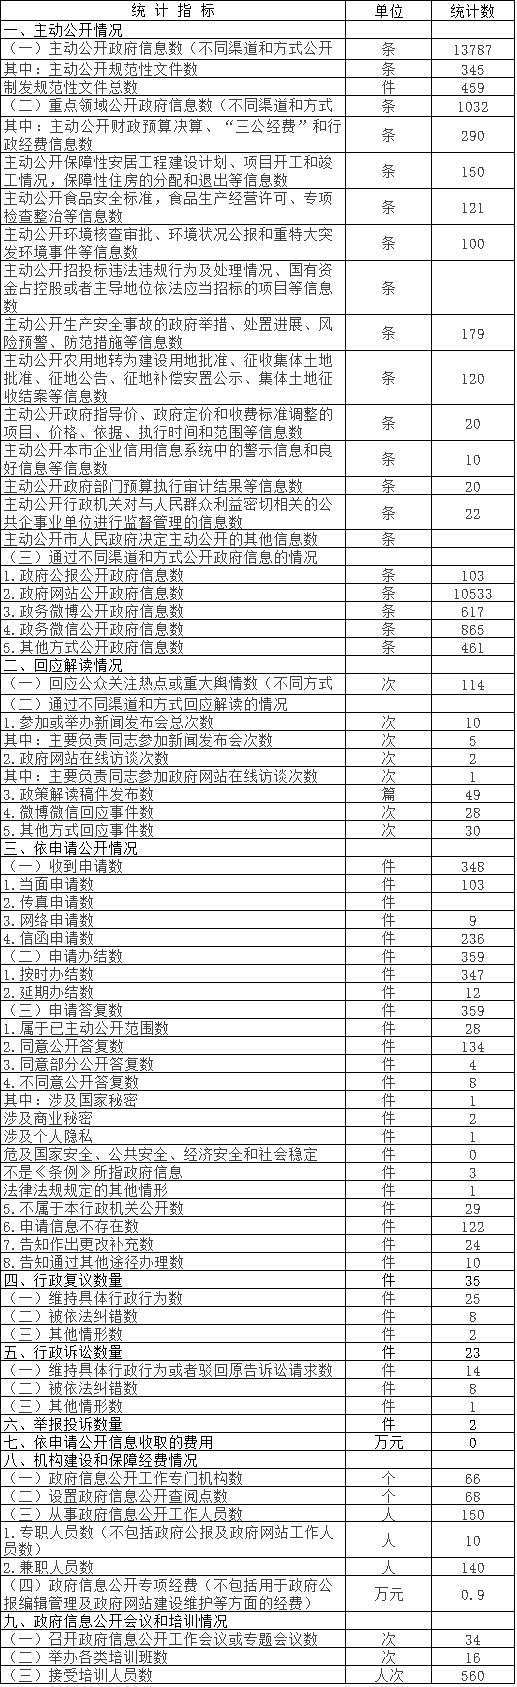 北京市通州區政府信息公開情況統計表 (2016年度)